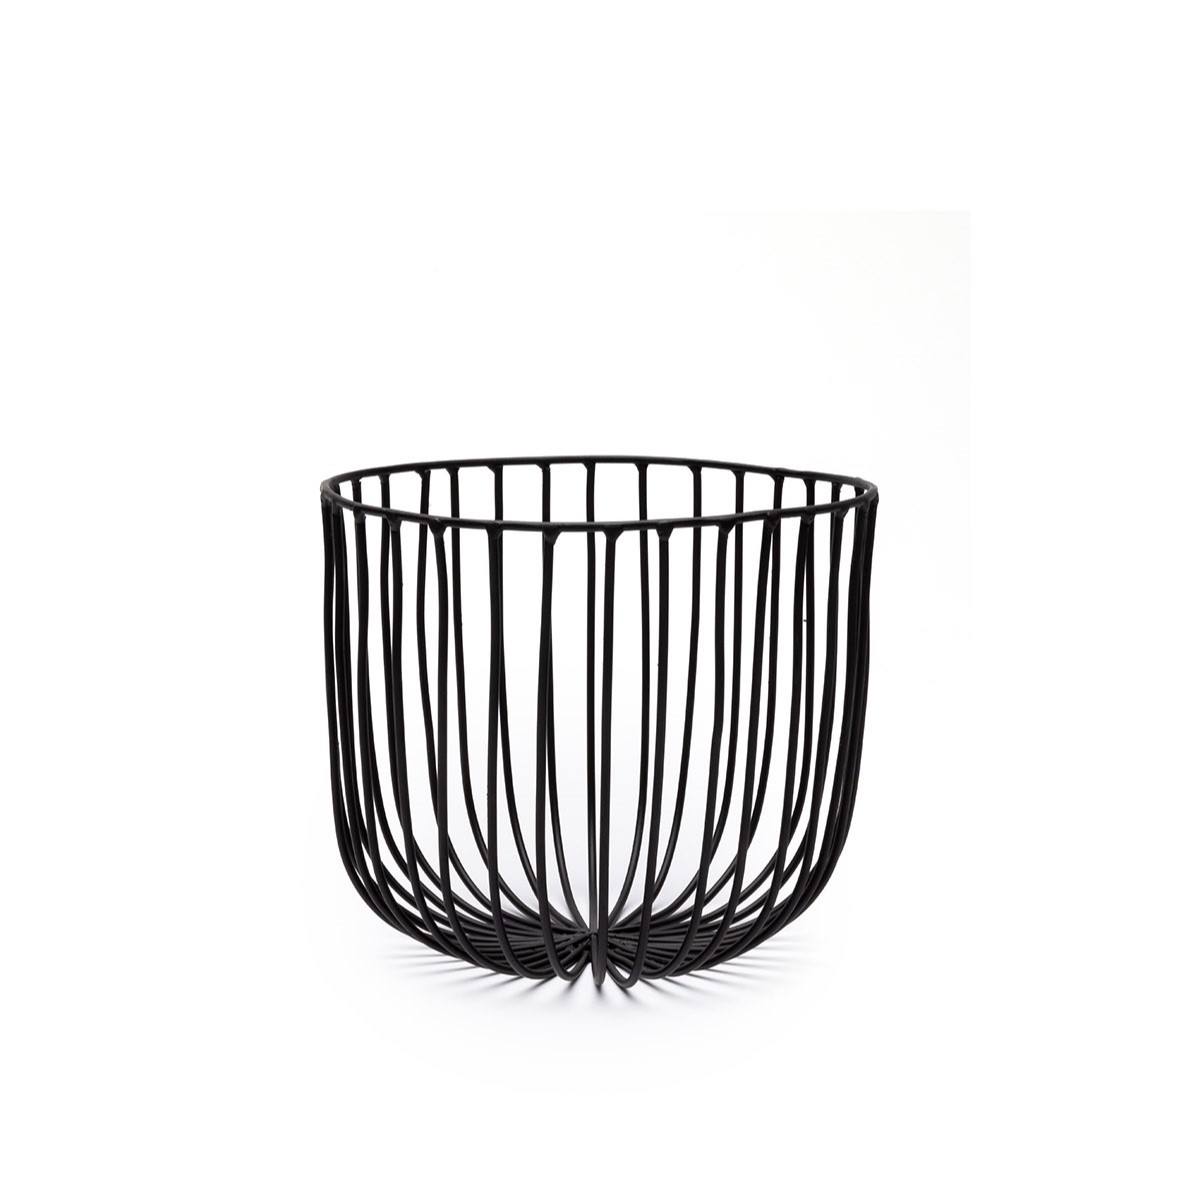 Serax Wire Catu Basket Iron - Metal Sculptures